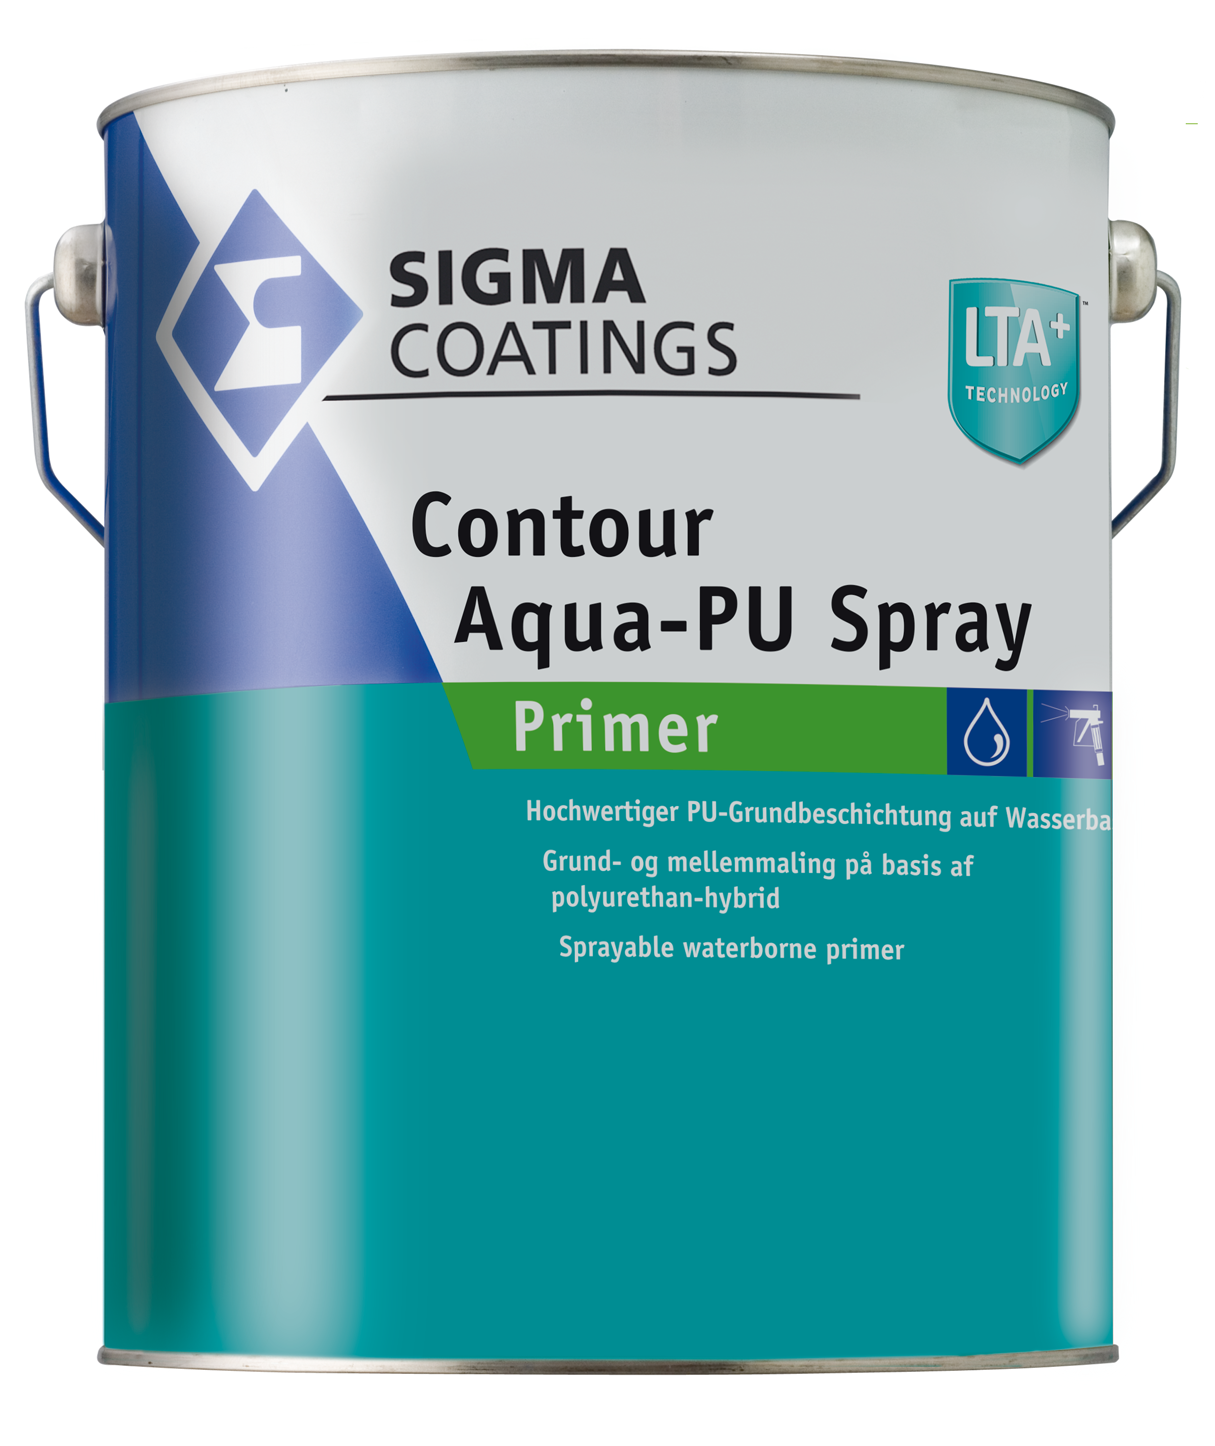 Contour Aqua-PU Spray Primer